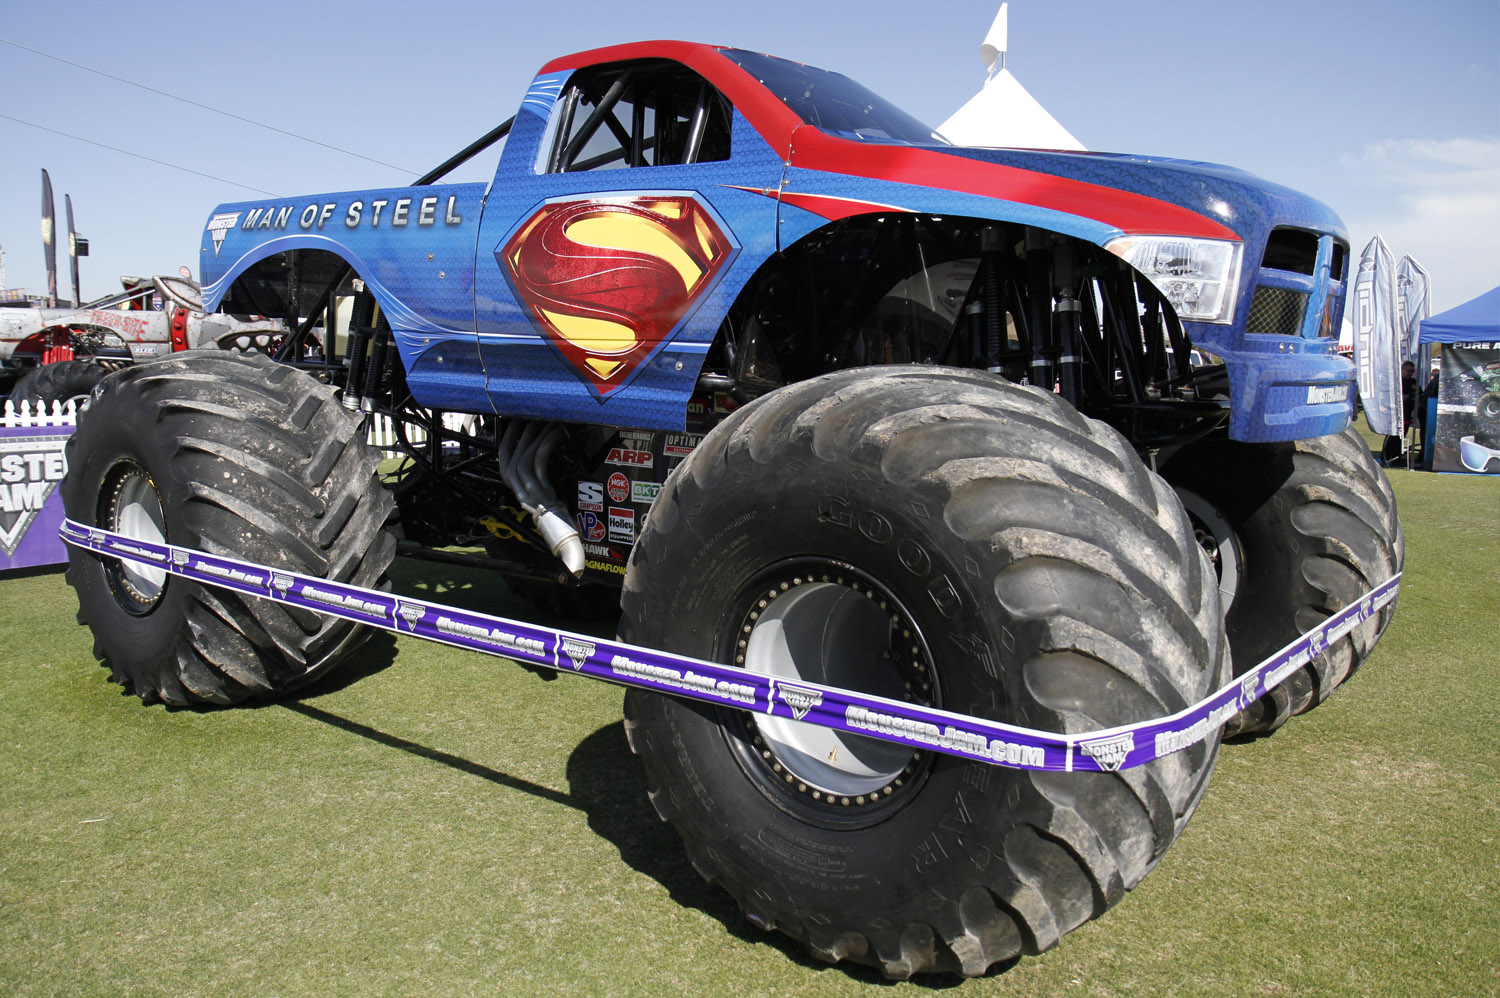 monster truck superman